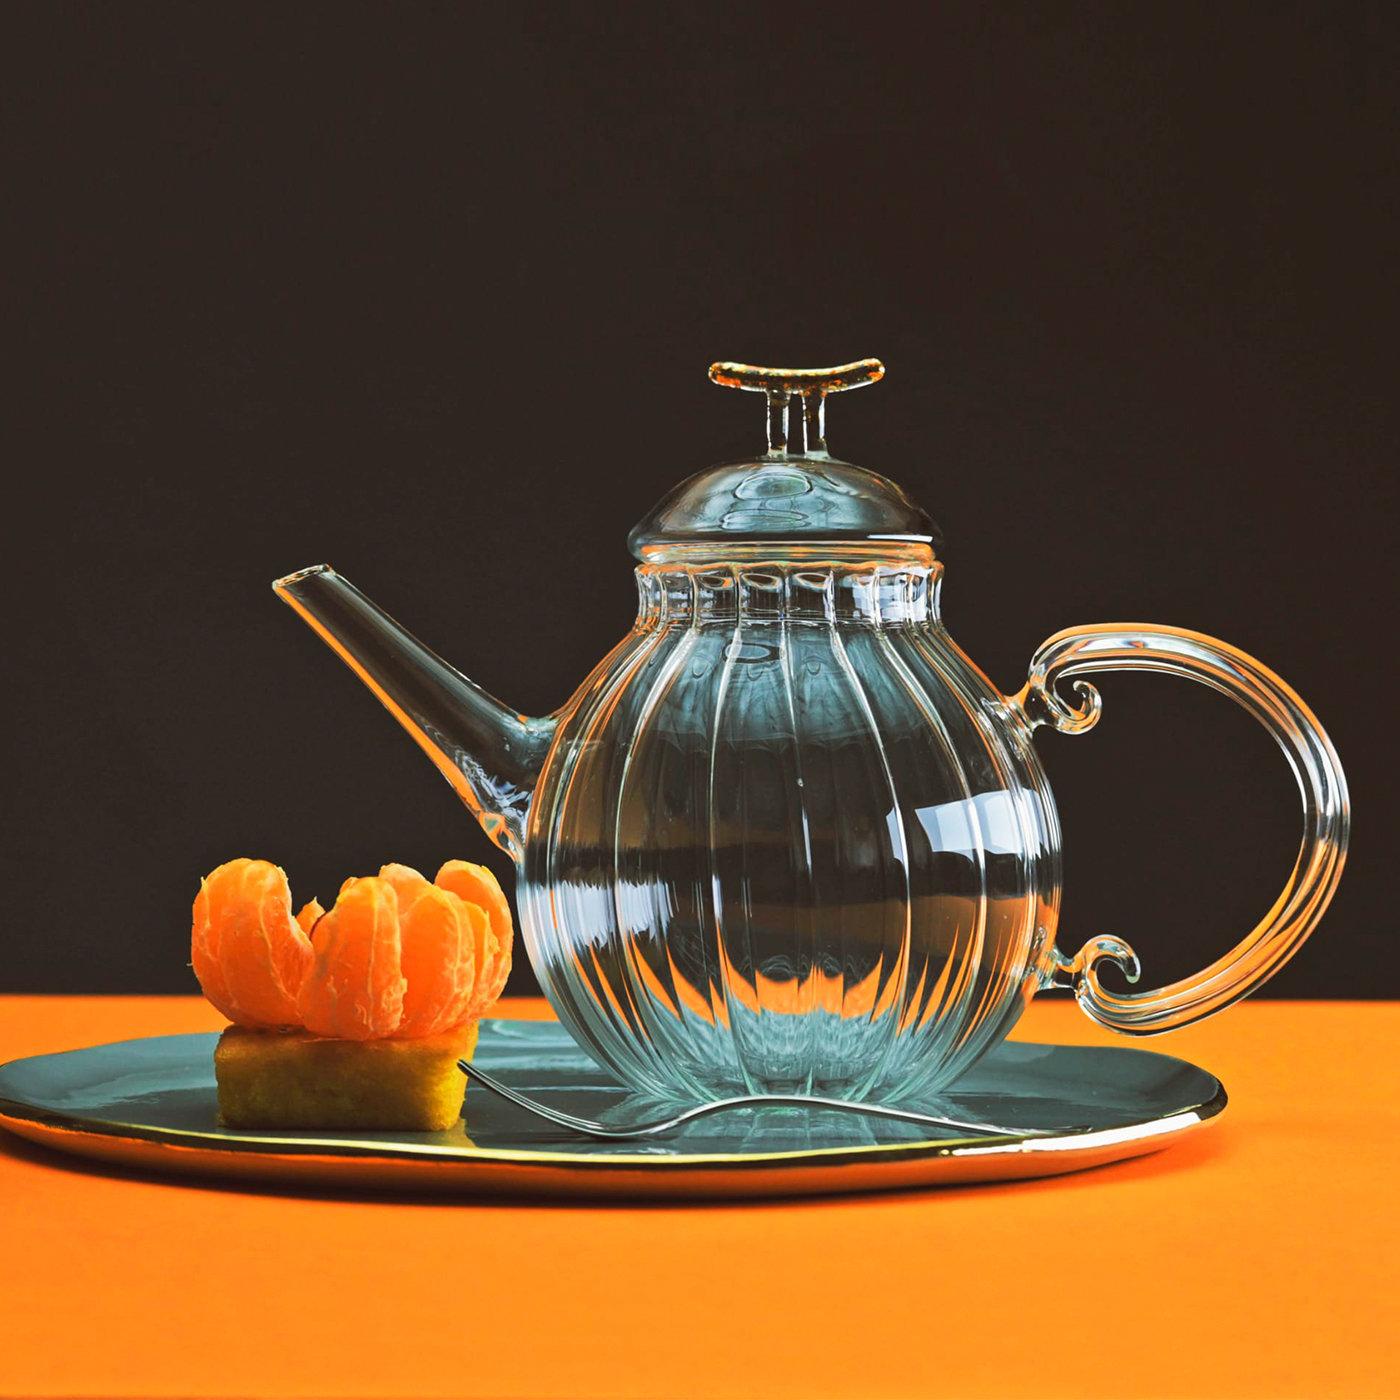 Diese elegante Teekanne wird vollständig von Hand aus transparentem, mundgeblasenem Glas hergestellt. Sie besticht durch eine auffällige Textur aus parallelen Linien, die vertikal auf dem geschwungenen Körper verlaufen und die geschwungene Form